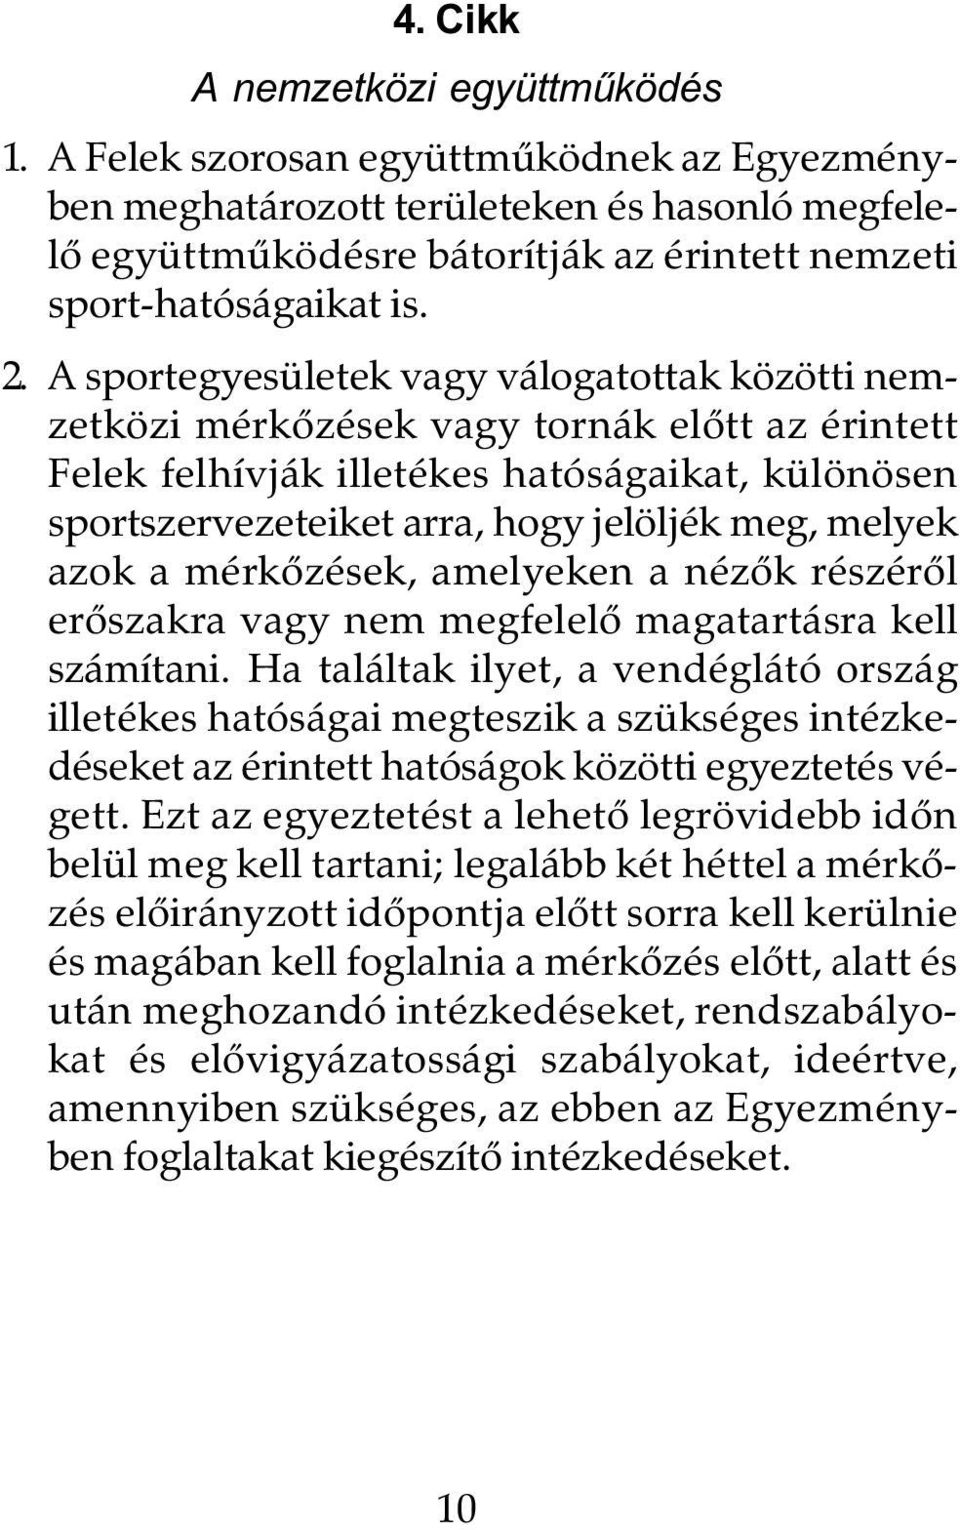 A sportegyesületek vagy válogatottak közötti nemzetközi mérkôzések vagy tornák elôtt az érintett Felek felhívják illetékes hatóságaikat, különösen sportszervezeteiket arra, hogy jelöljék meg, melyek